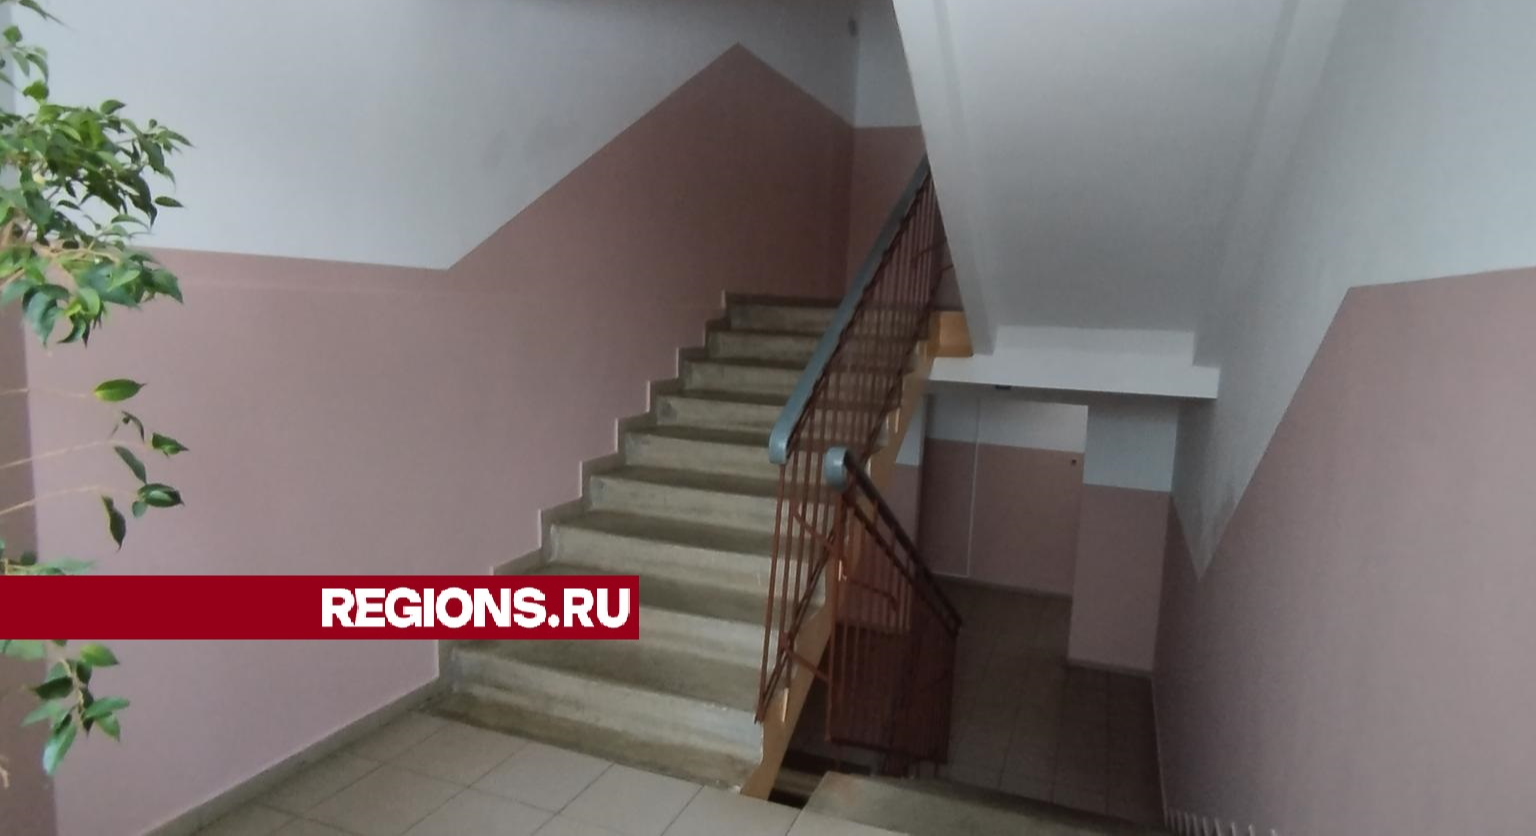 В микрорайоне Марьинский в доме № 2 отремонтировали подъезд раньше срока